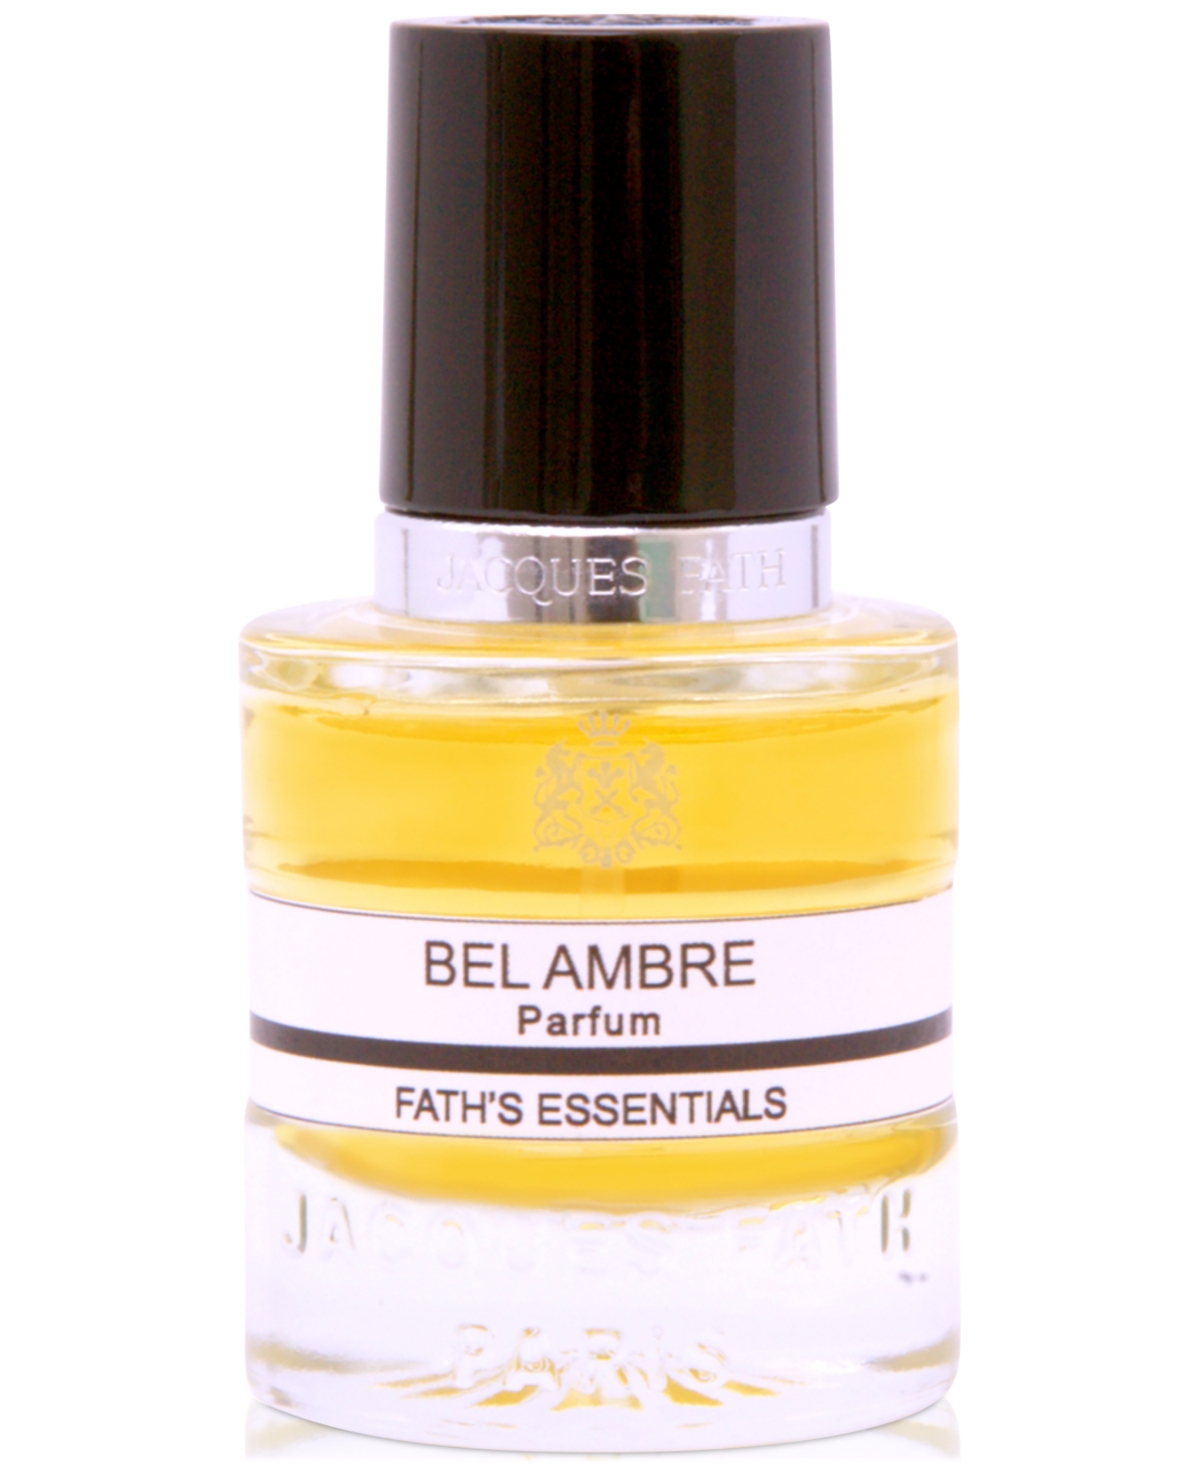 Bel Ambre Parfum, 0.5 oz.